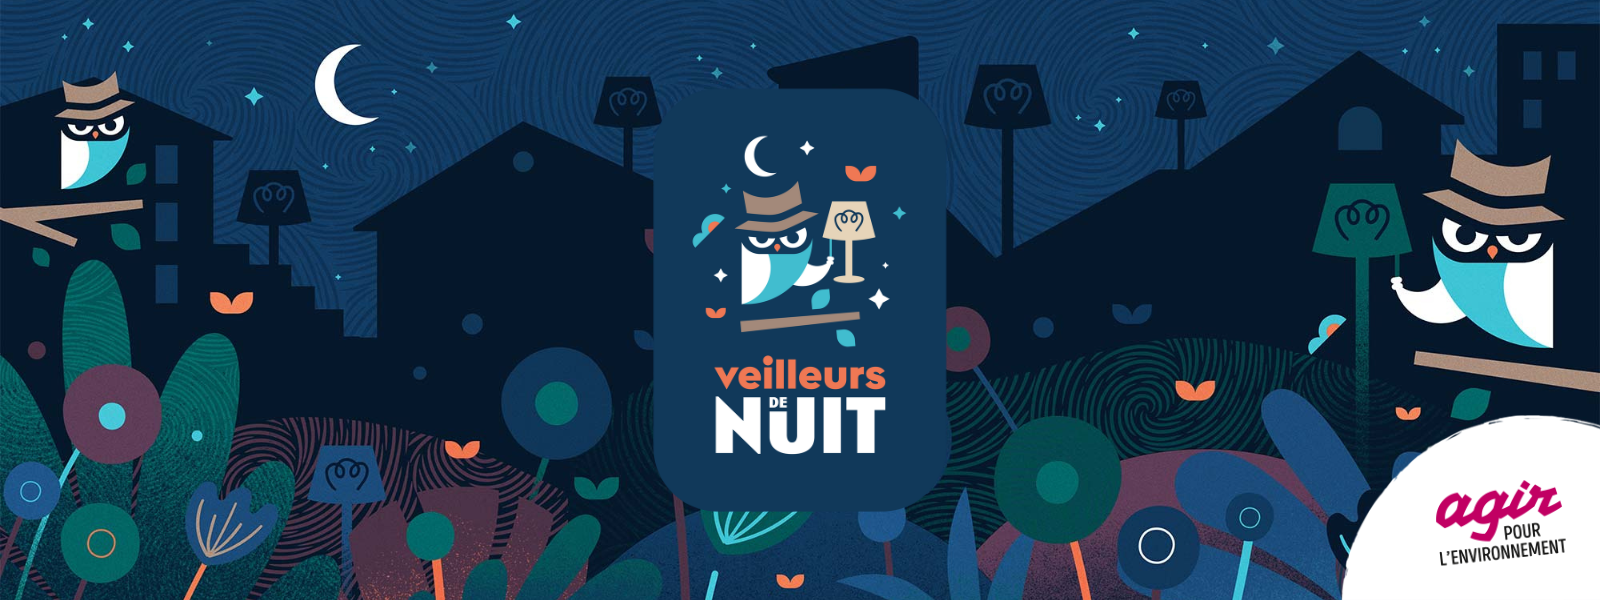 Site Veilleur de Nuit